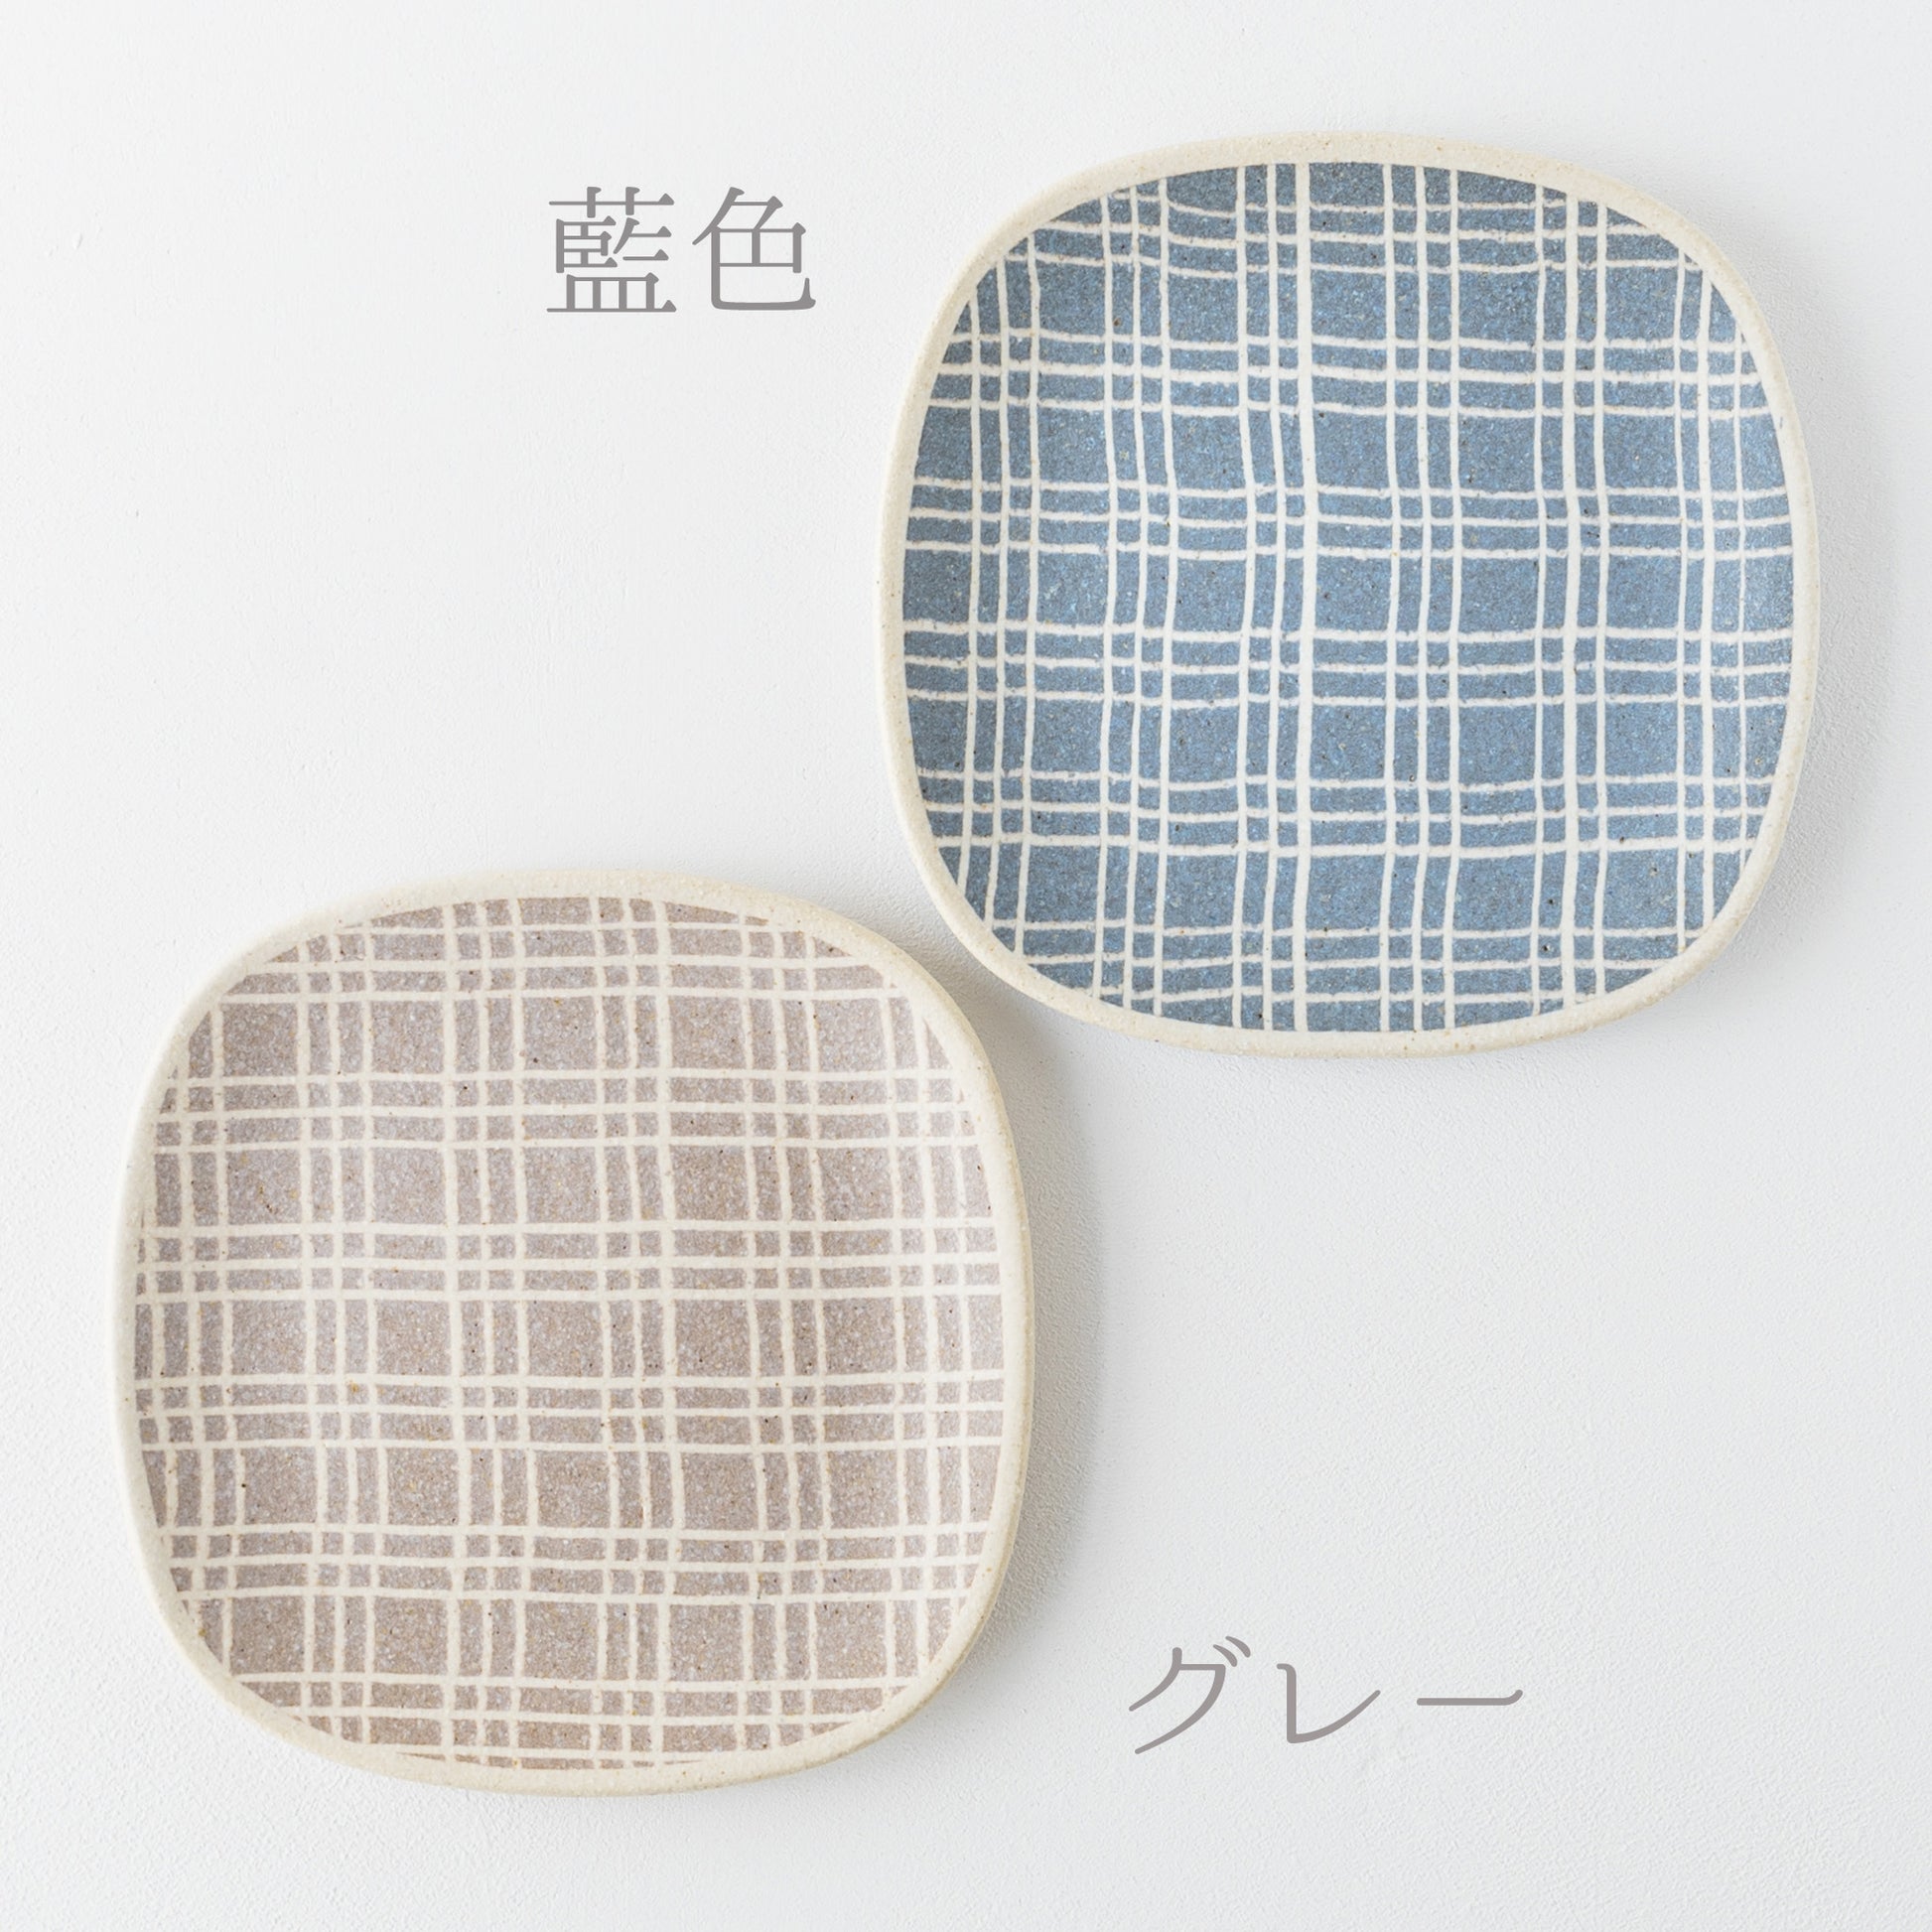 よろけた格子模様がおしゃれでかわいい坂下花子さんの練り込みの四方皿